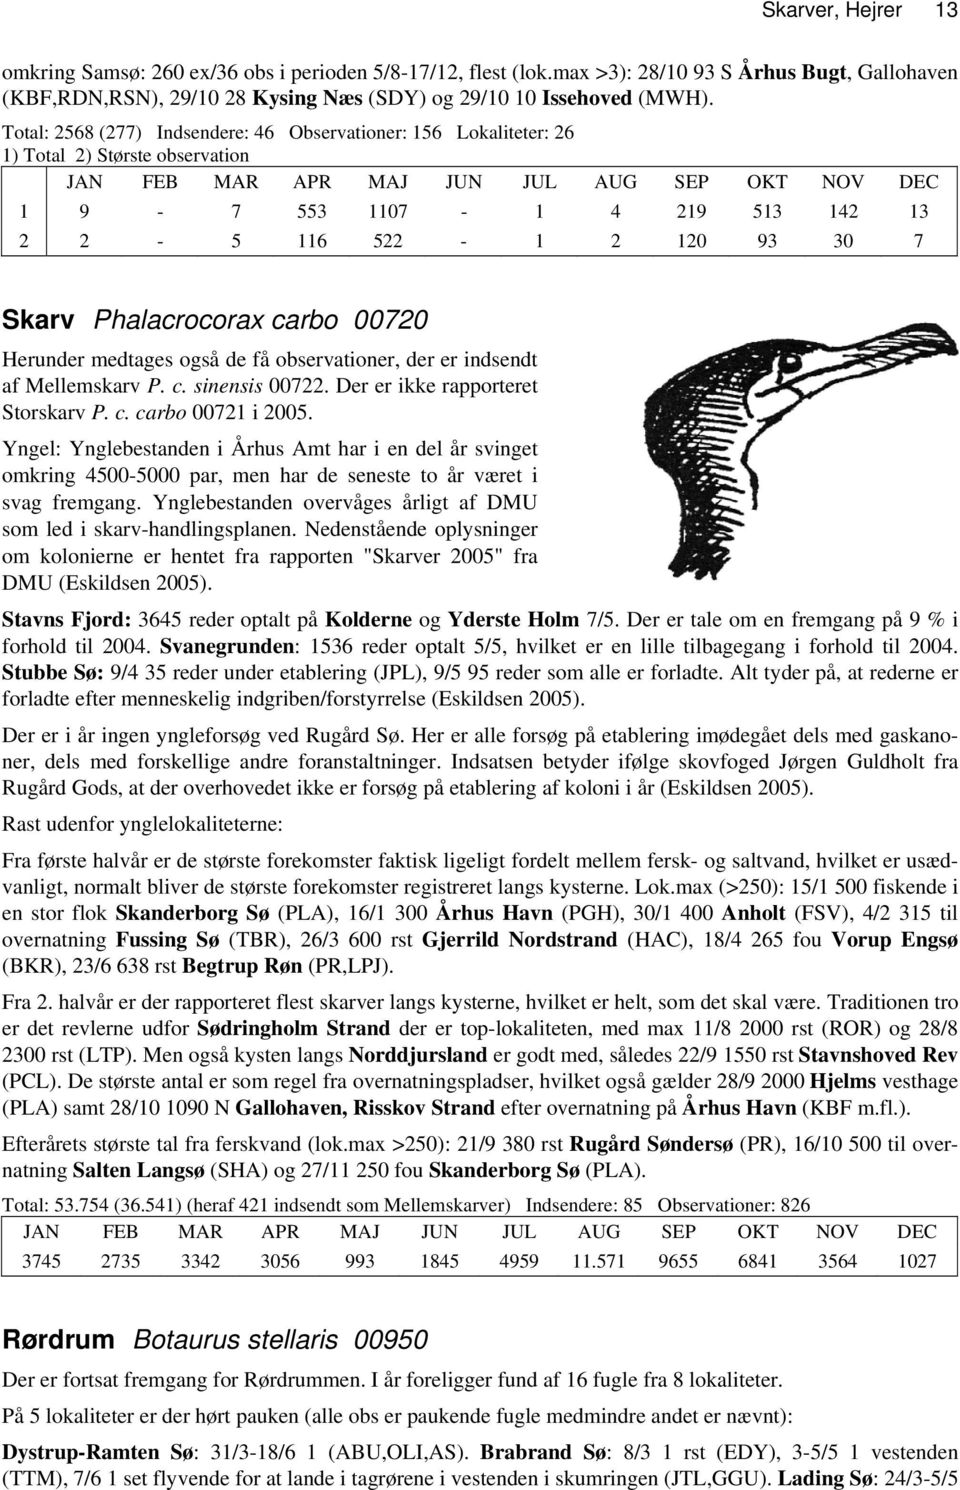 Skarver, Hejrer Herunder medtages også de få observationer, der er indsendt af Mellemskarv P. c. sinensis 00722. Der er ikke rapporteret Storskarv P. c. carbo 00721 i 2005.